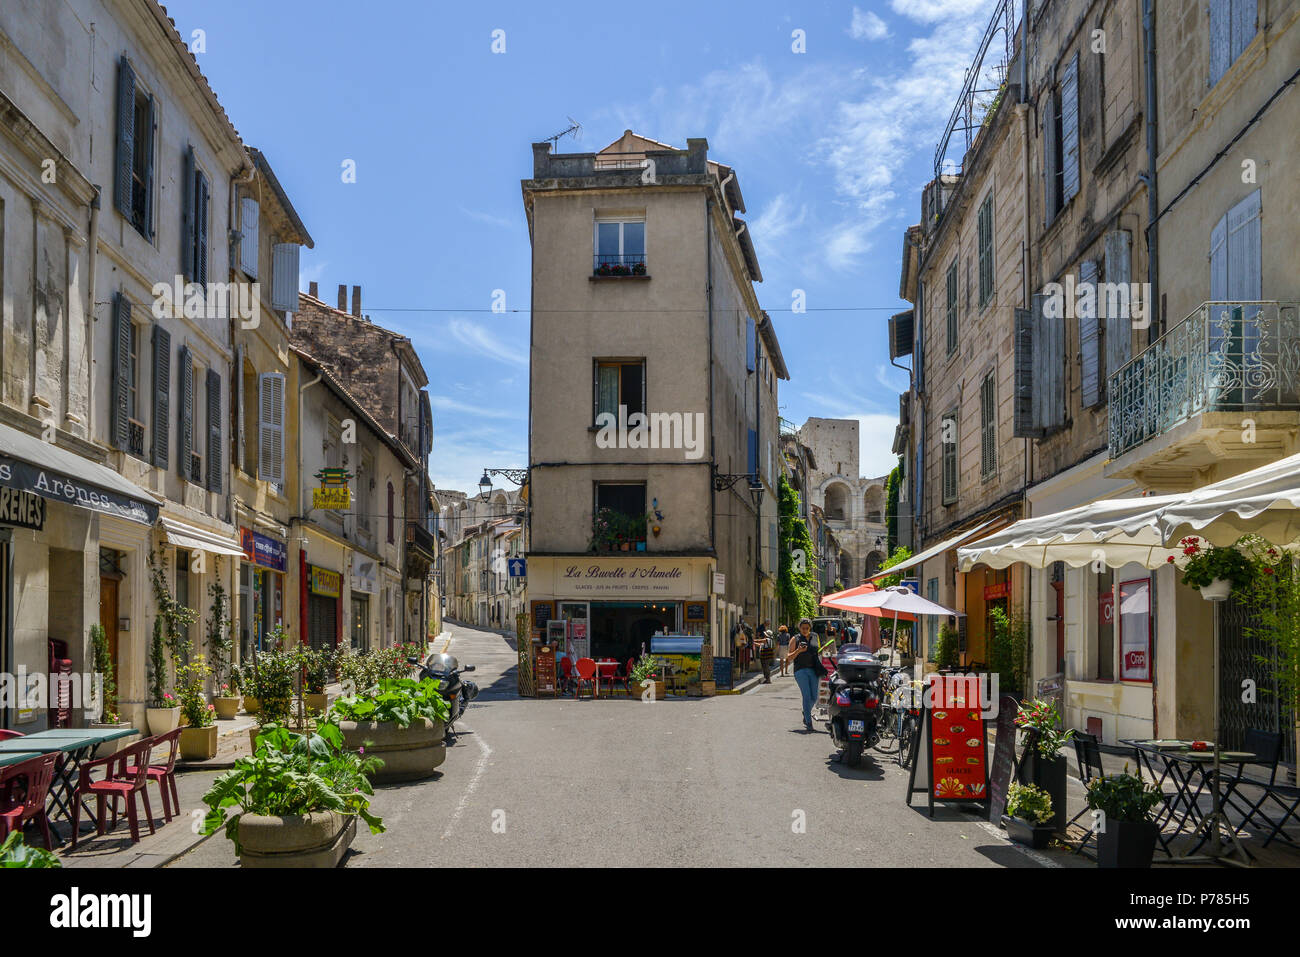 Arles, France - 16 juin 2018 : les touristes sur la rue du centre historique d'Arles, une ancienne ville romaine, située dans le sud de la France en pro Banque D'Images